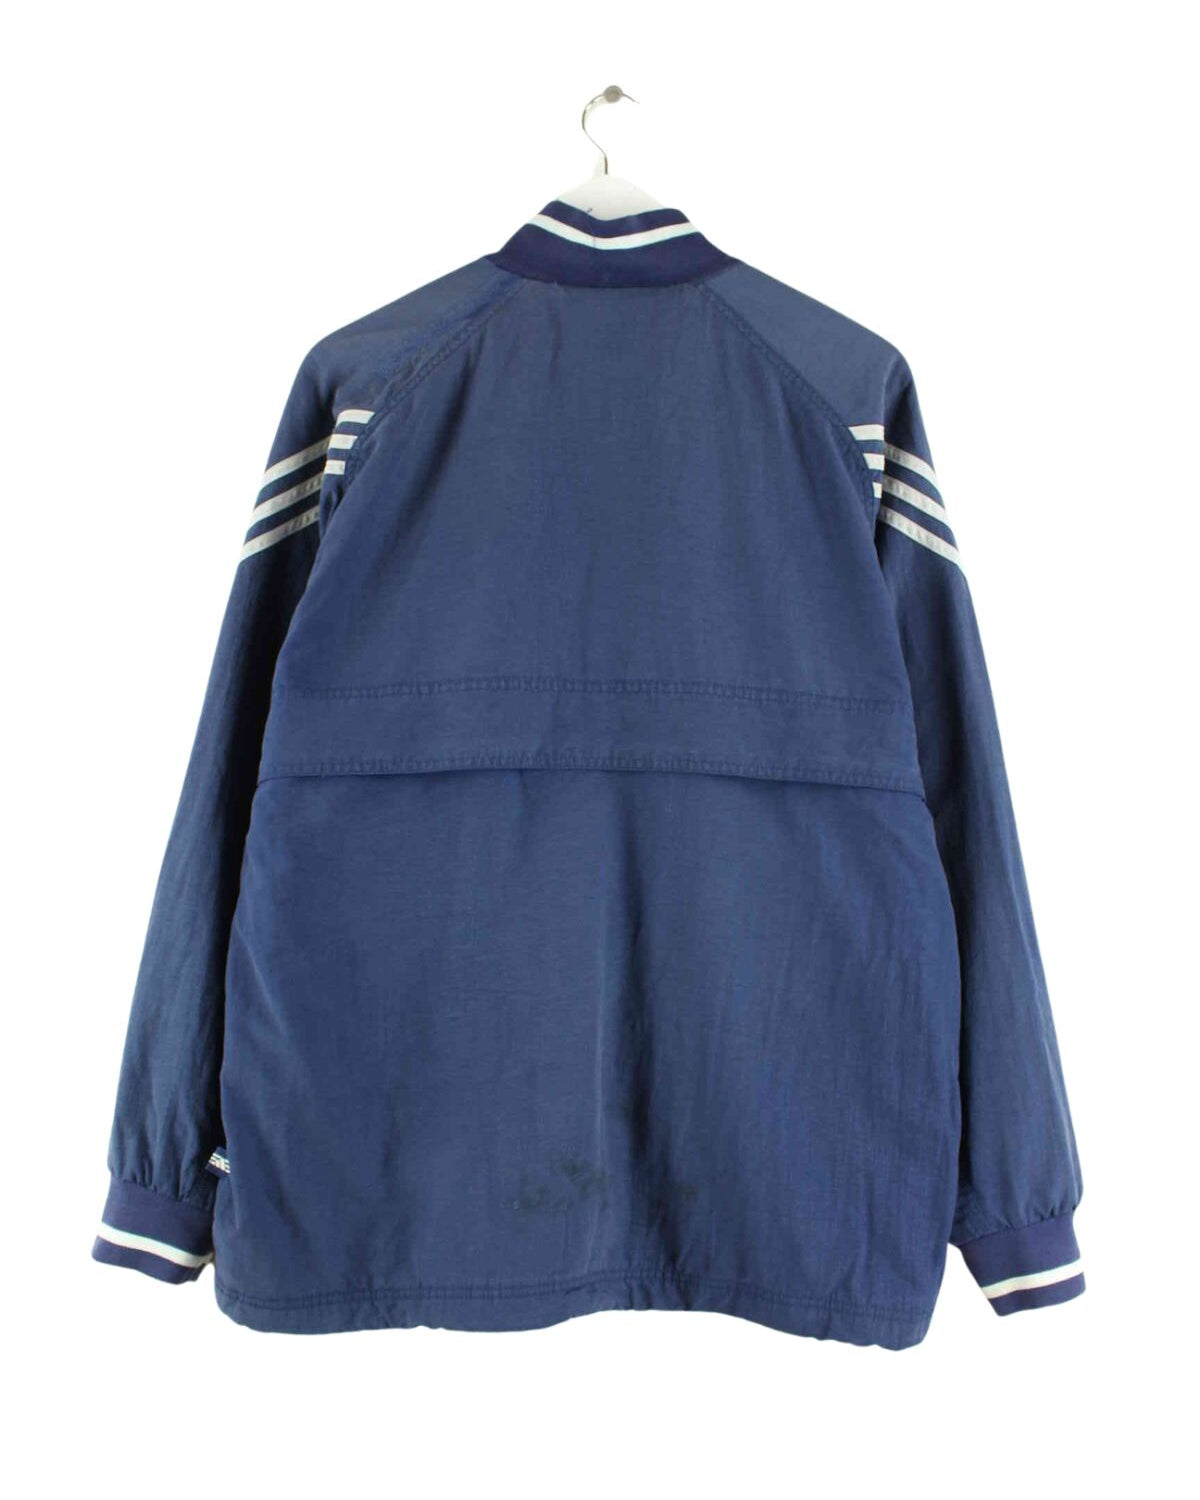 Adidas 90s Vintage 3-Stripes Jacke Blau M (back image)